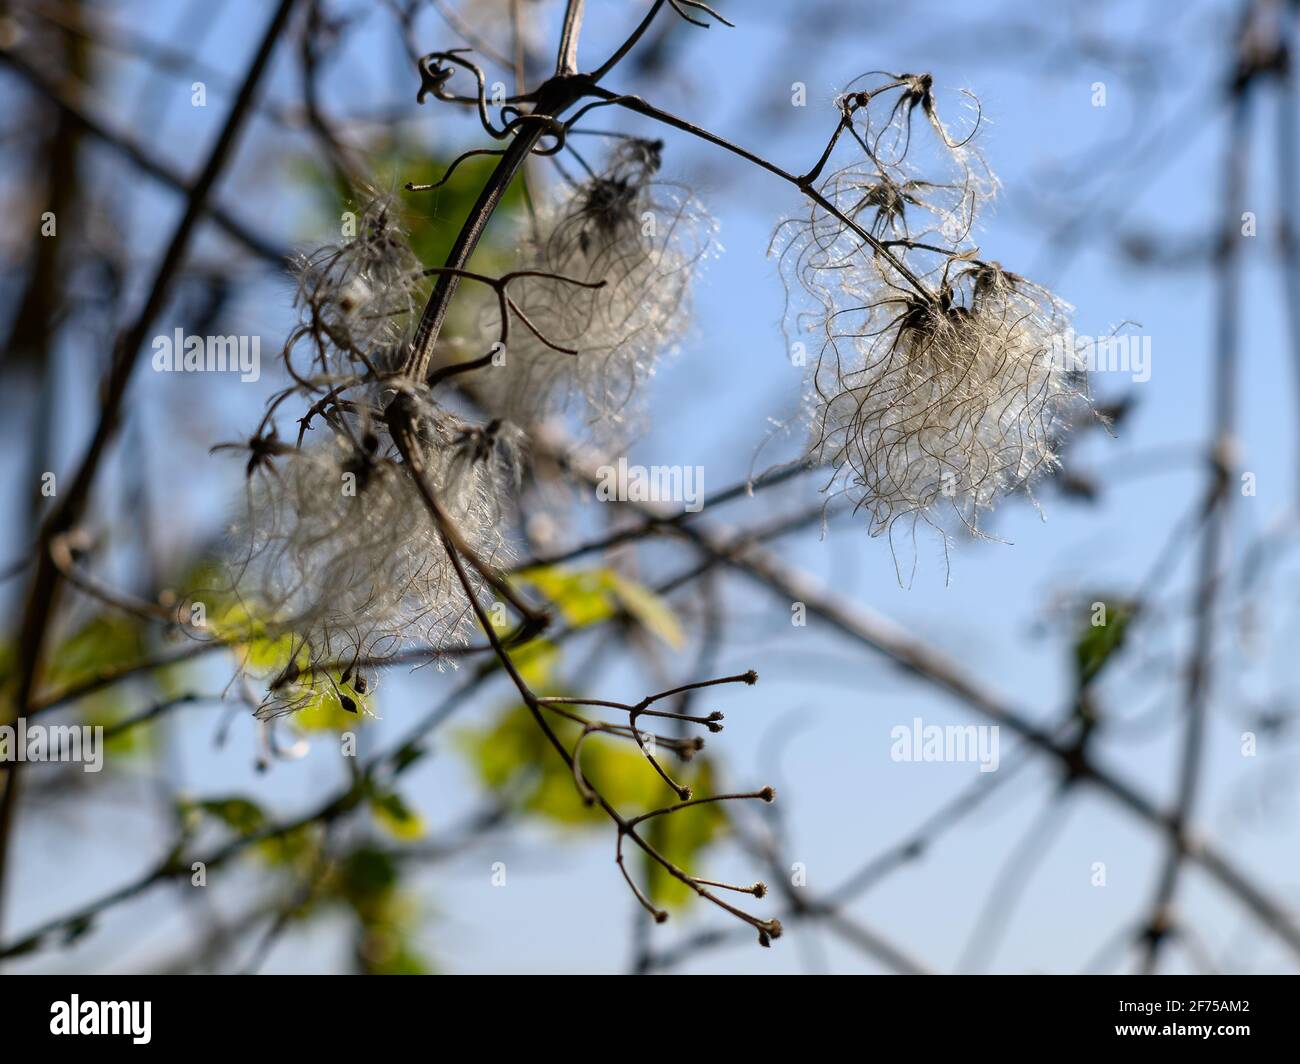 Graines blanches et moelleuses de Wild Clematis, connu sous le nom de Traveller's Joy, dans un hedgerow au printemps, au Royaume-Uni Banque D'Images